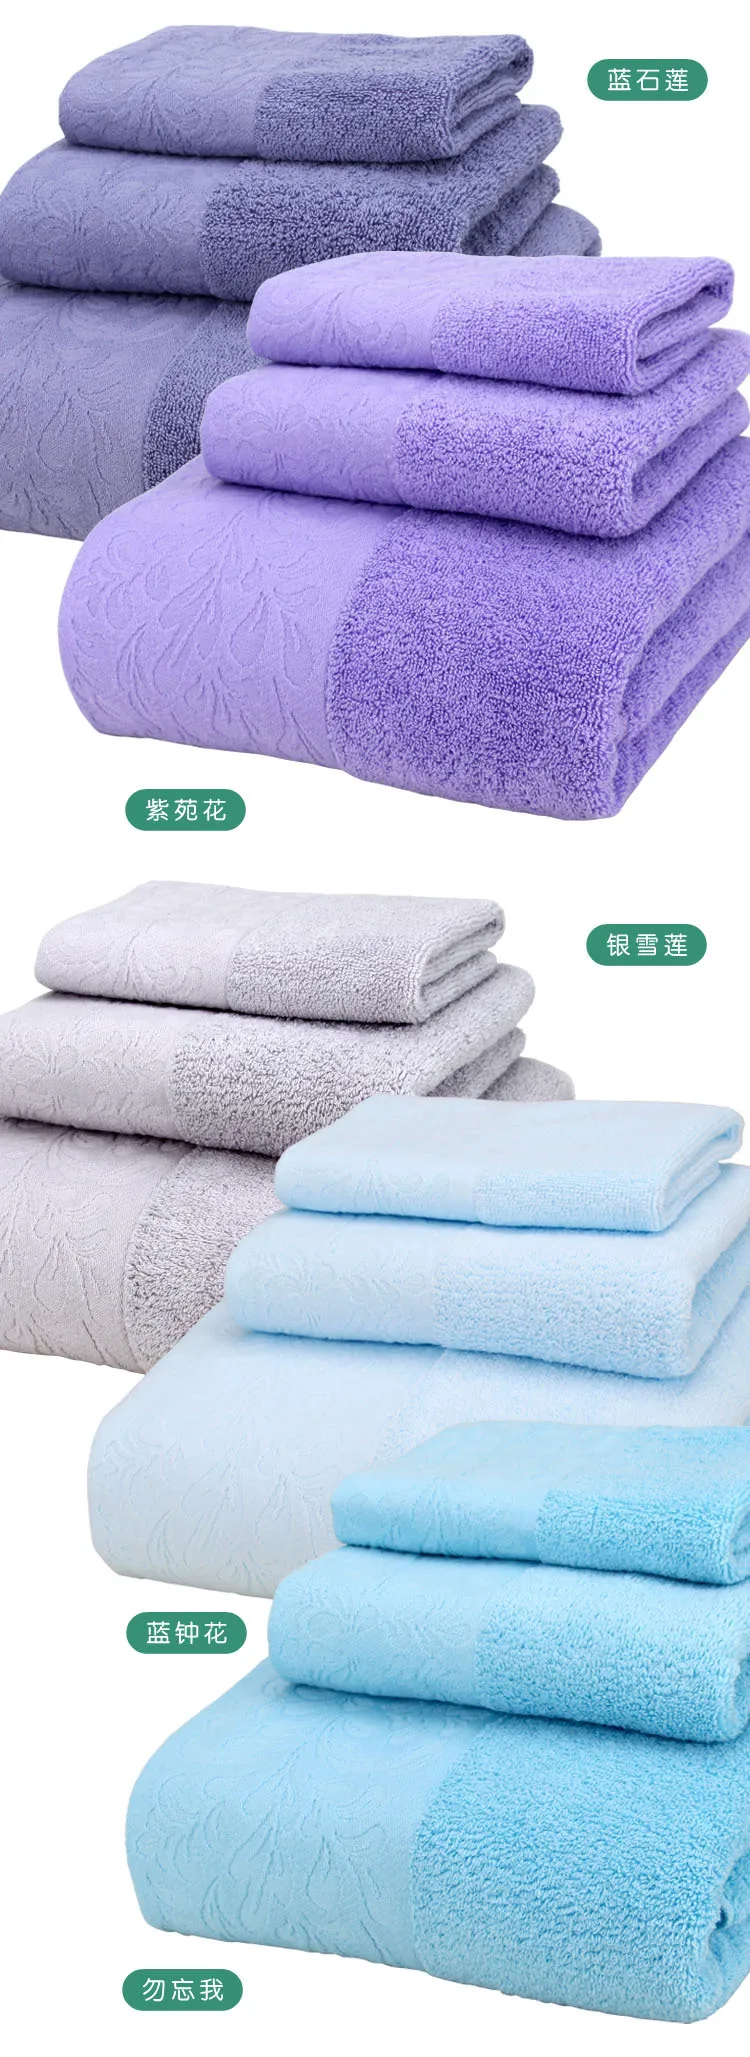 Новое качество отель полотенца s Набор хлопковых полотенец руки/лицо полотенца банные полотенце для взрослых мочалки хорошо впитывающий ванная комната 3 шт